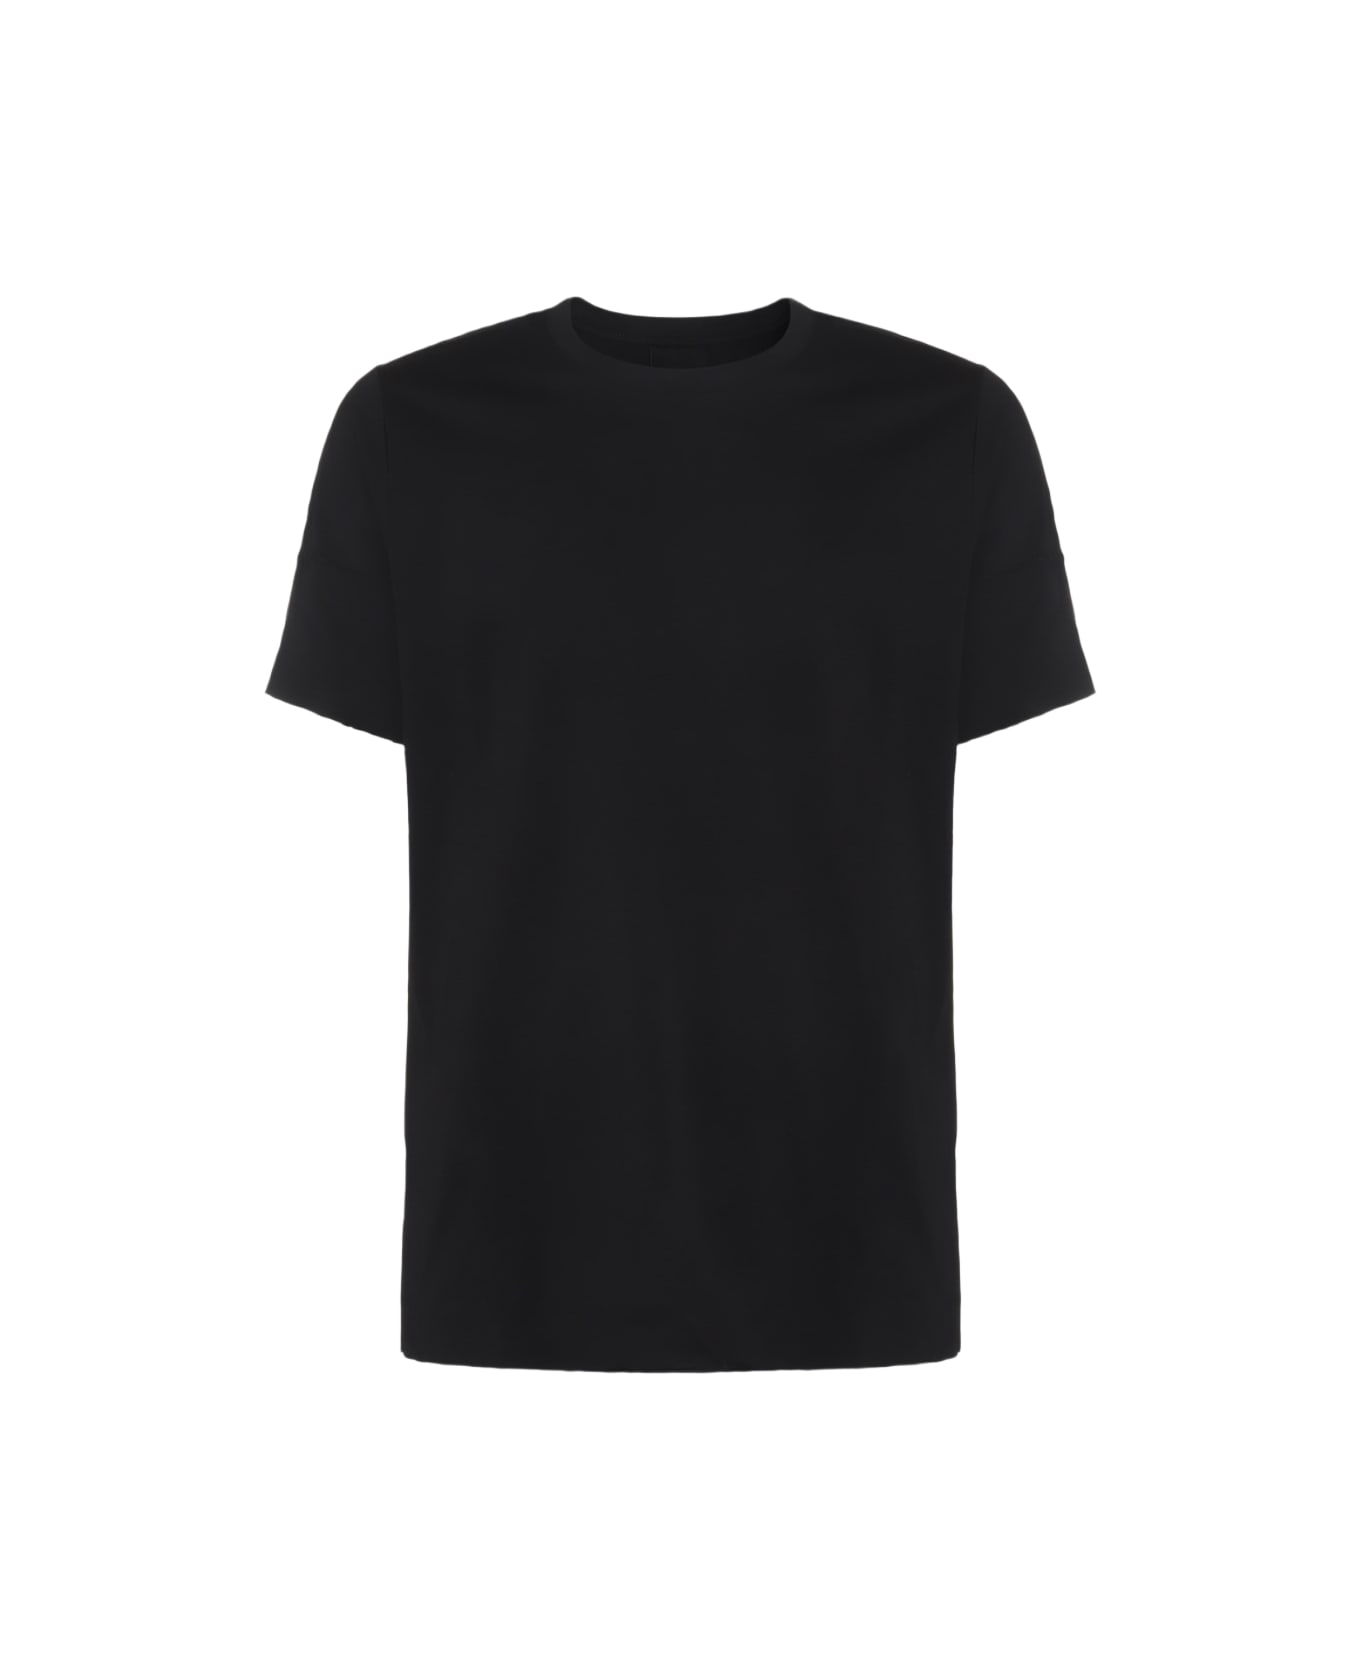 Thom Krom Black Cotton T-shirt - Black